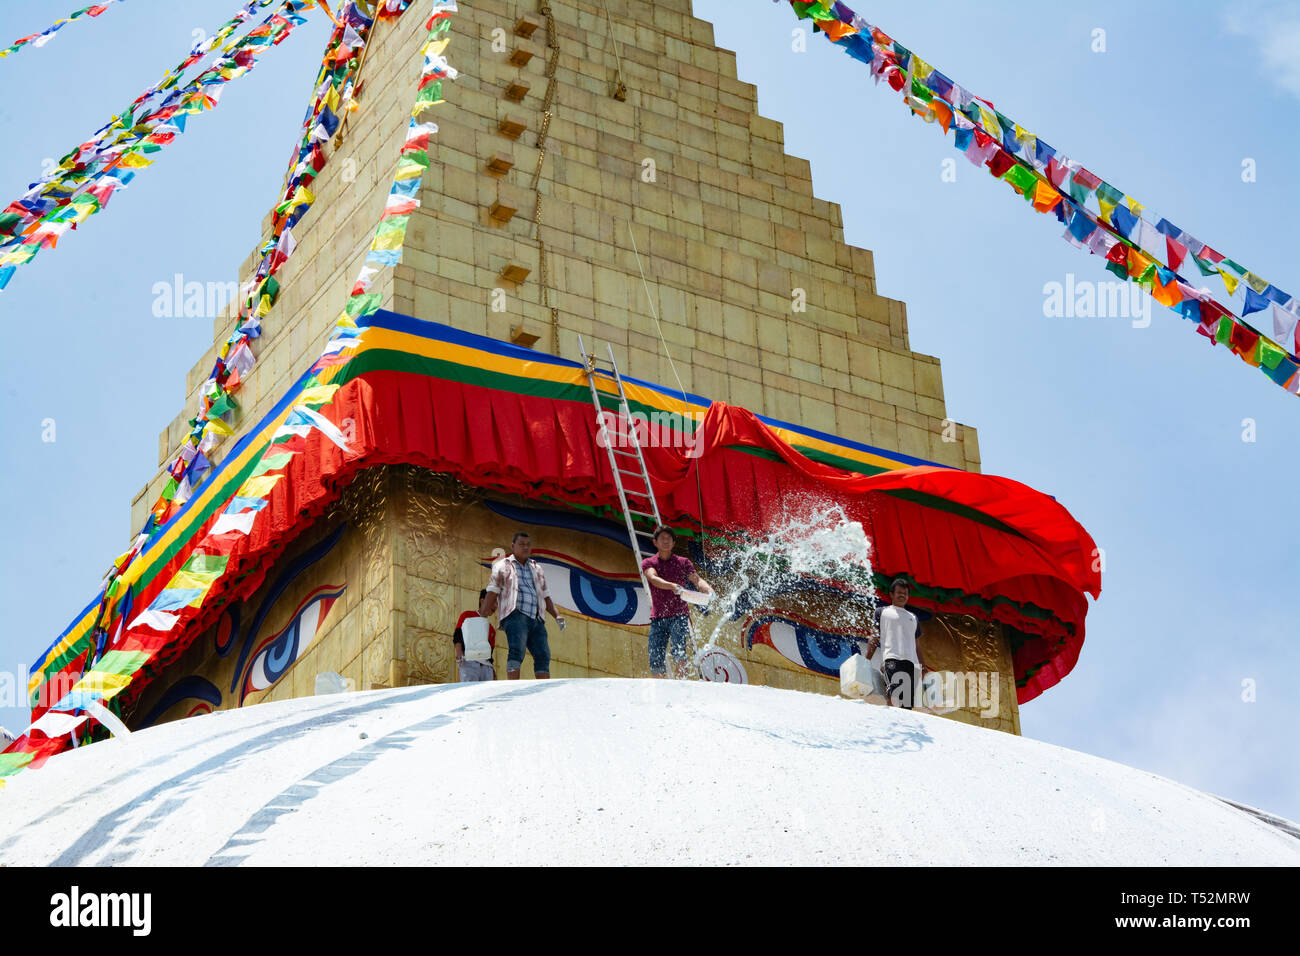 Kathmandu, Nepal - May 10, 2017: Unknown men cleaning the bouddha stupa using water at Bouddhanath Stupa. Stock Photo